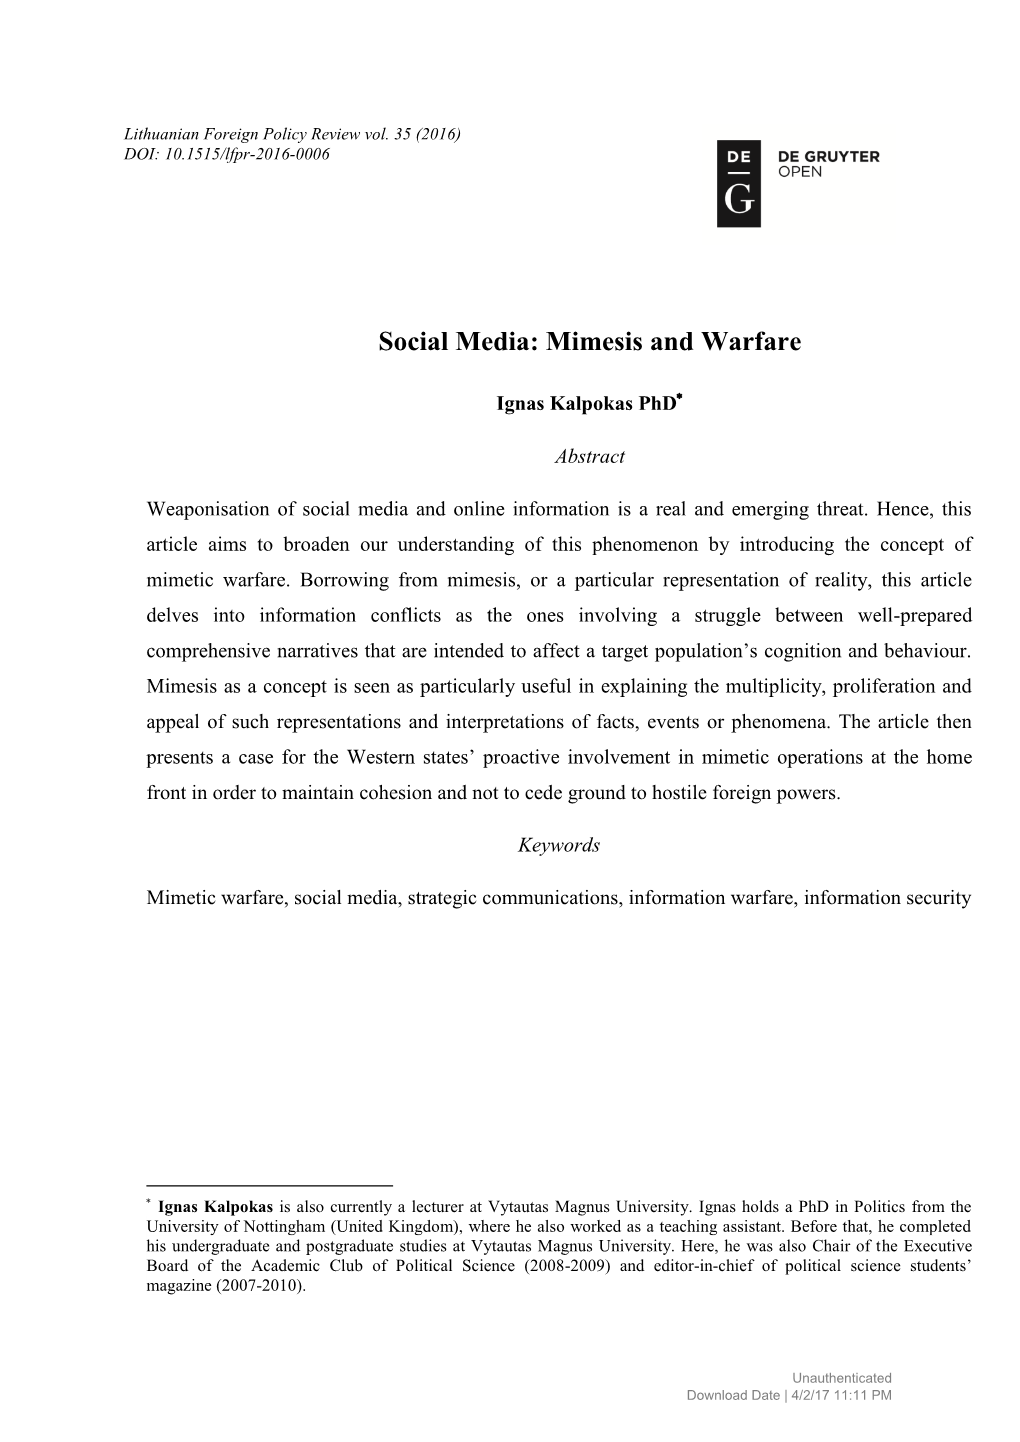 Social Media: Mimesis and Warfare